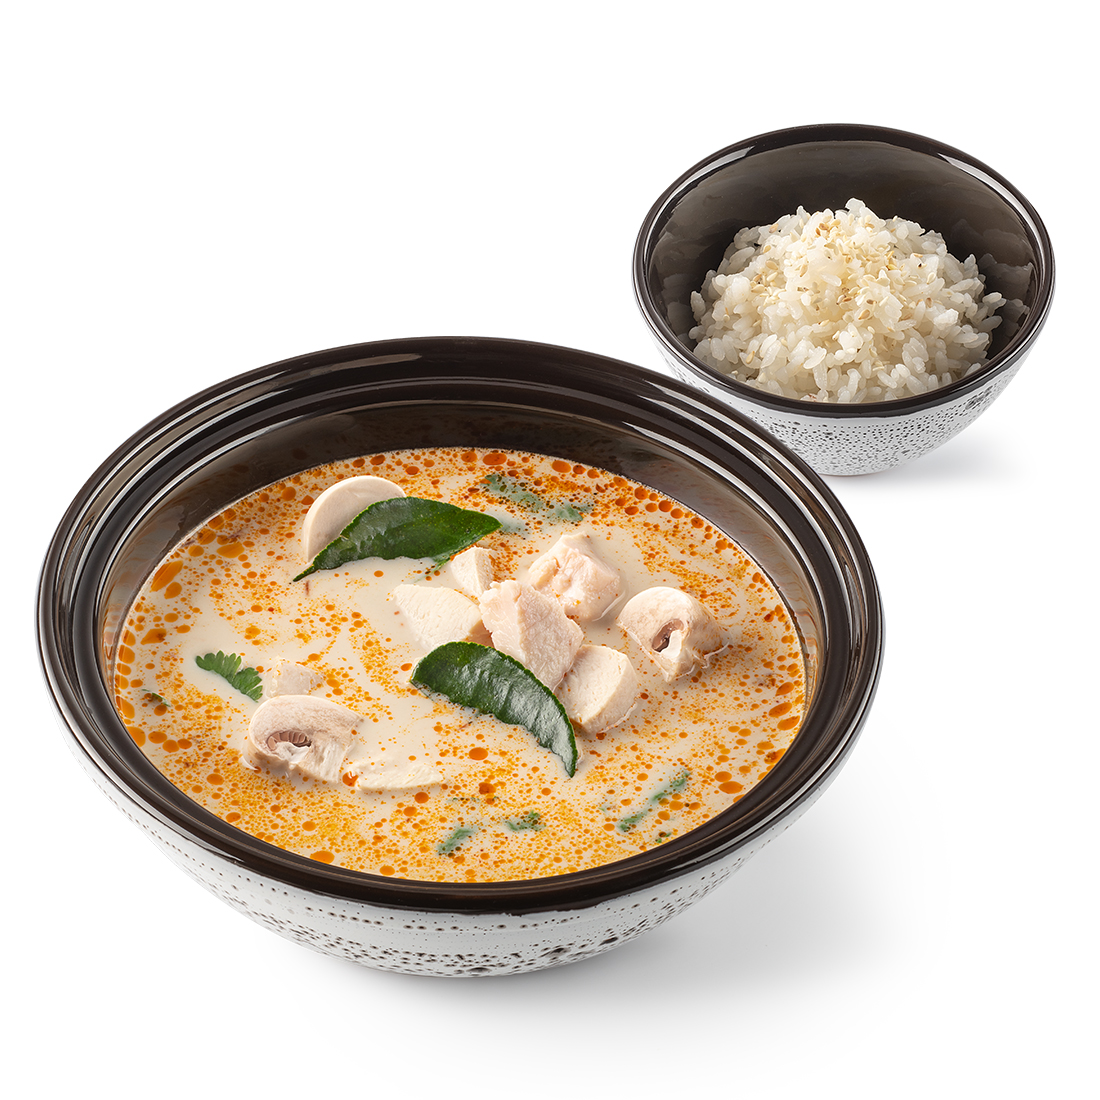 Домашний том ям: 17 рецептов приготовления вкусного тайского супа